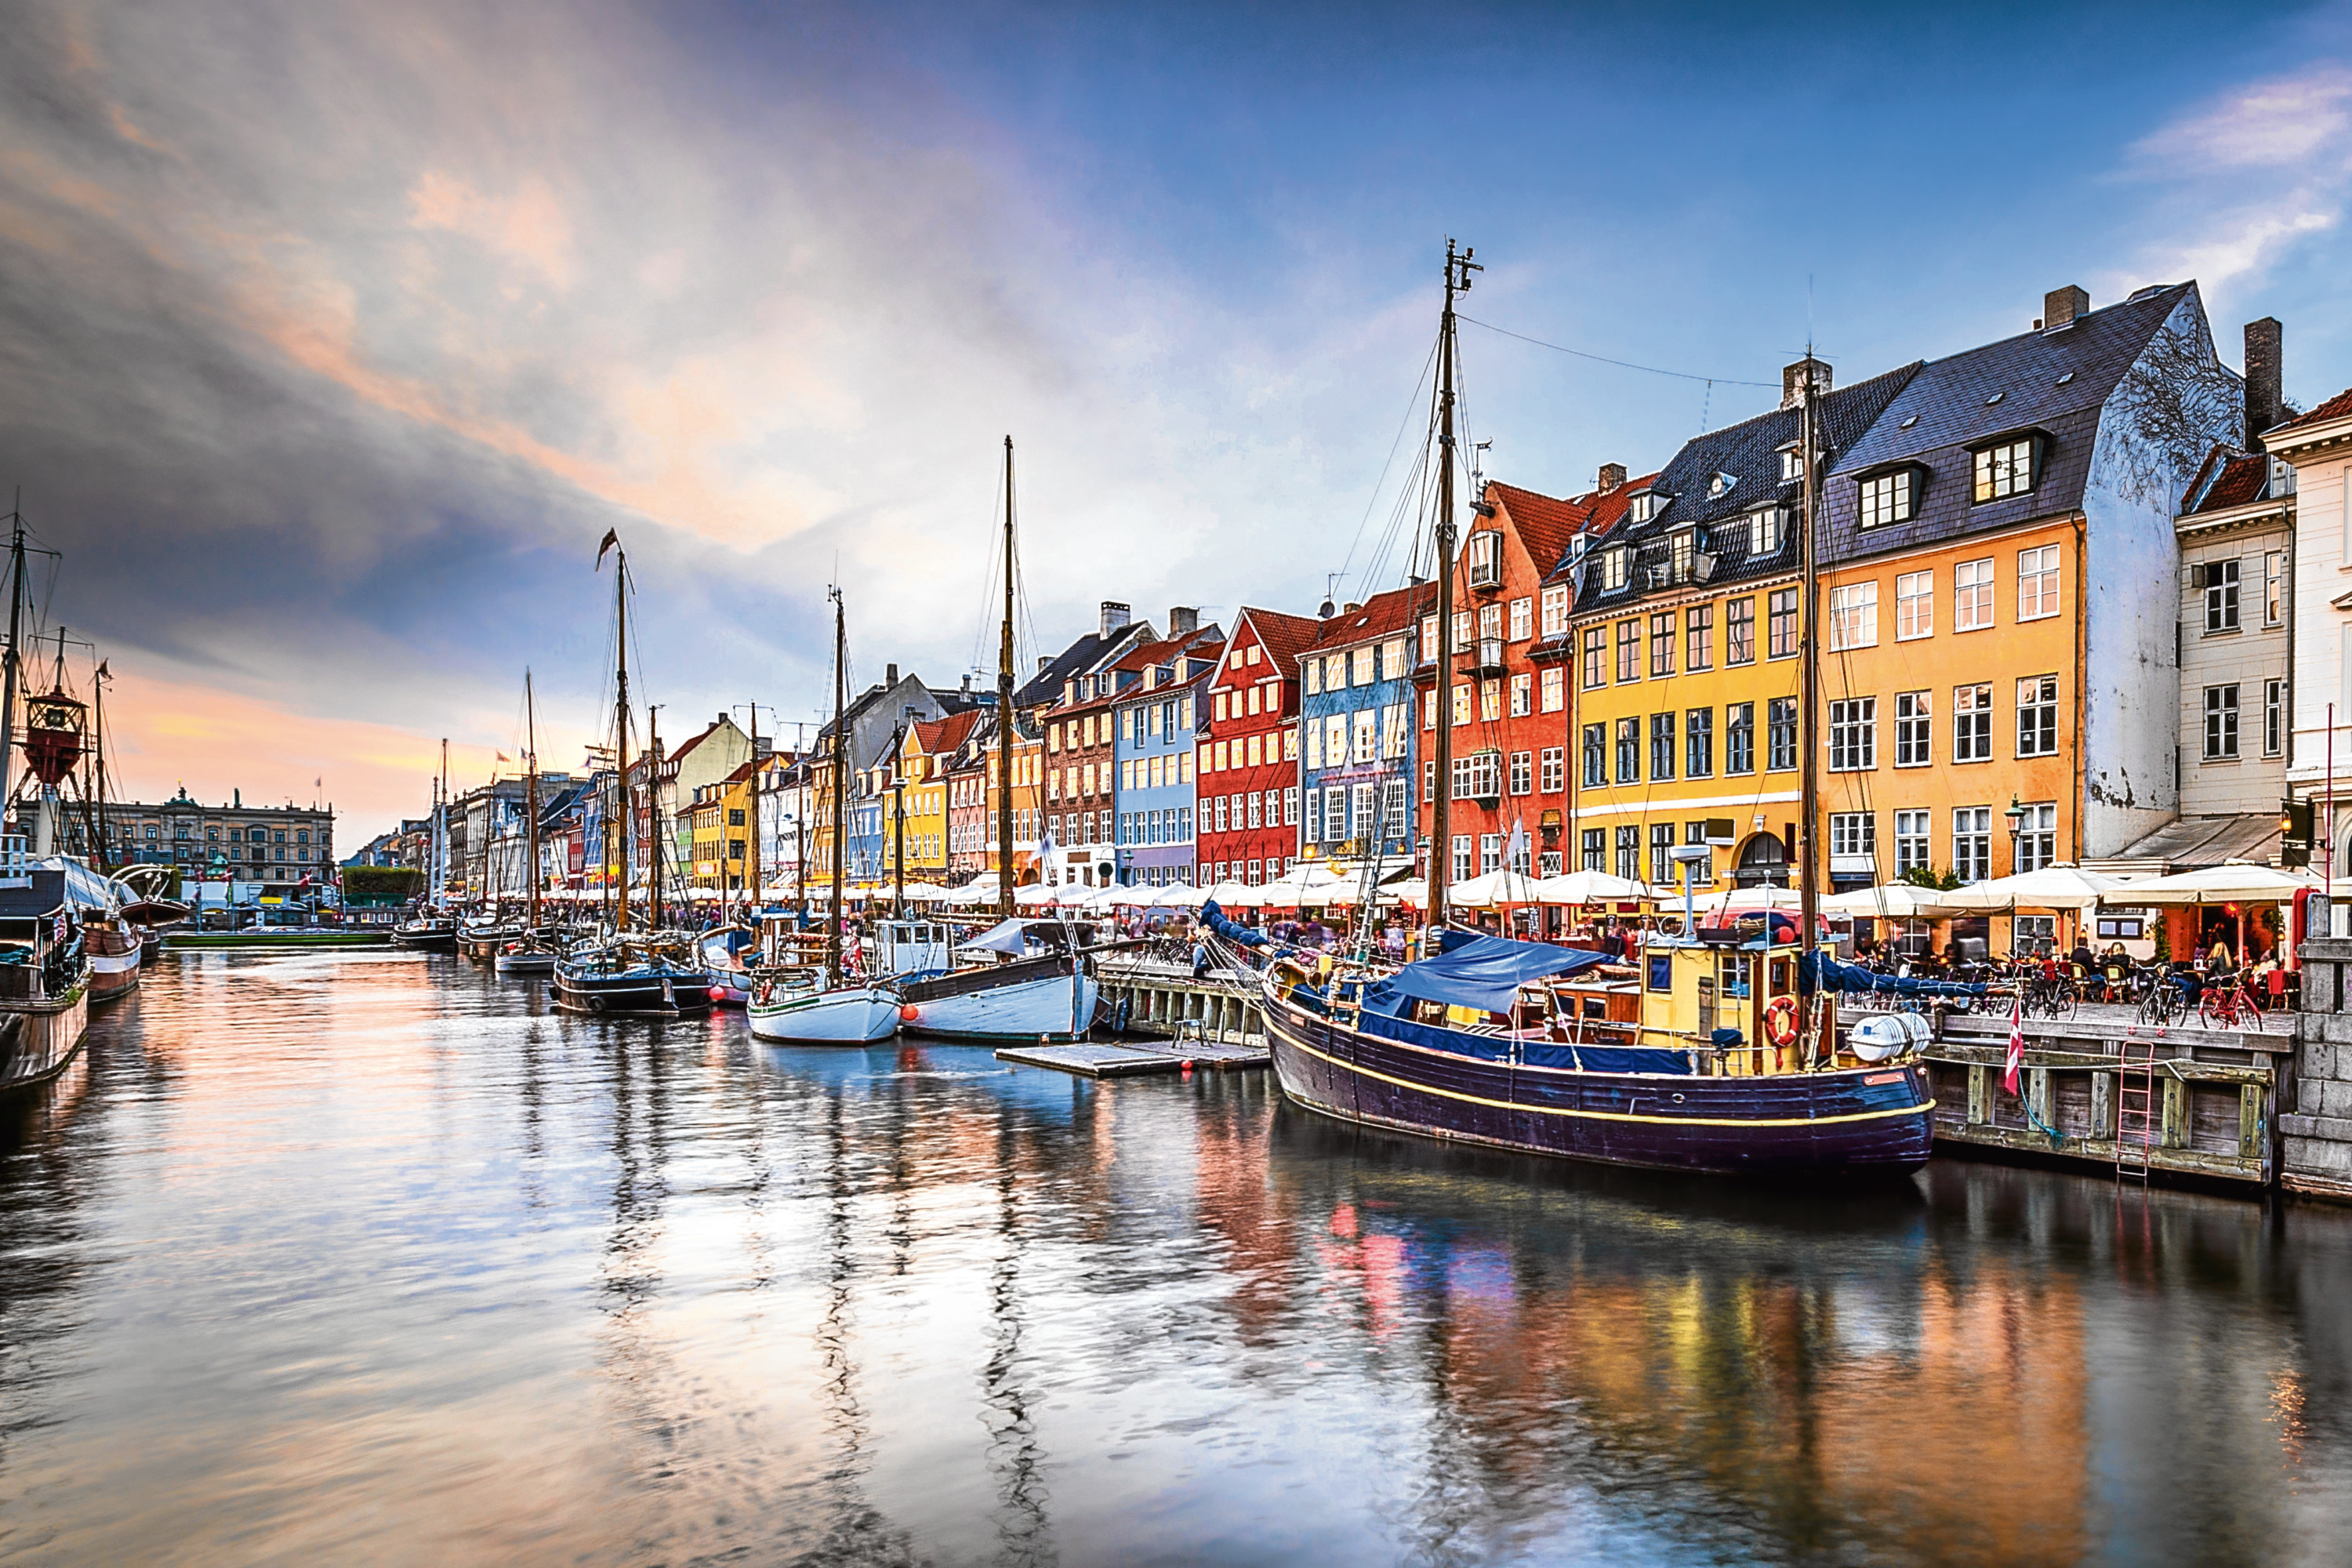 Copenhagen, Denmark on the Nyhavn Canal. (iStock)